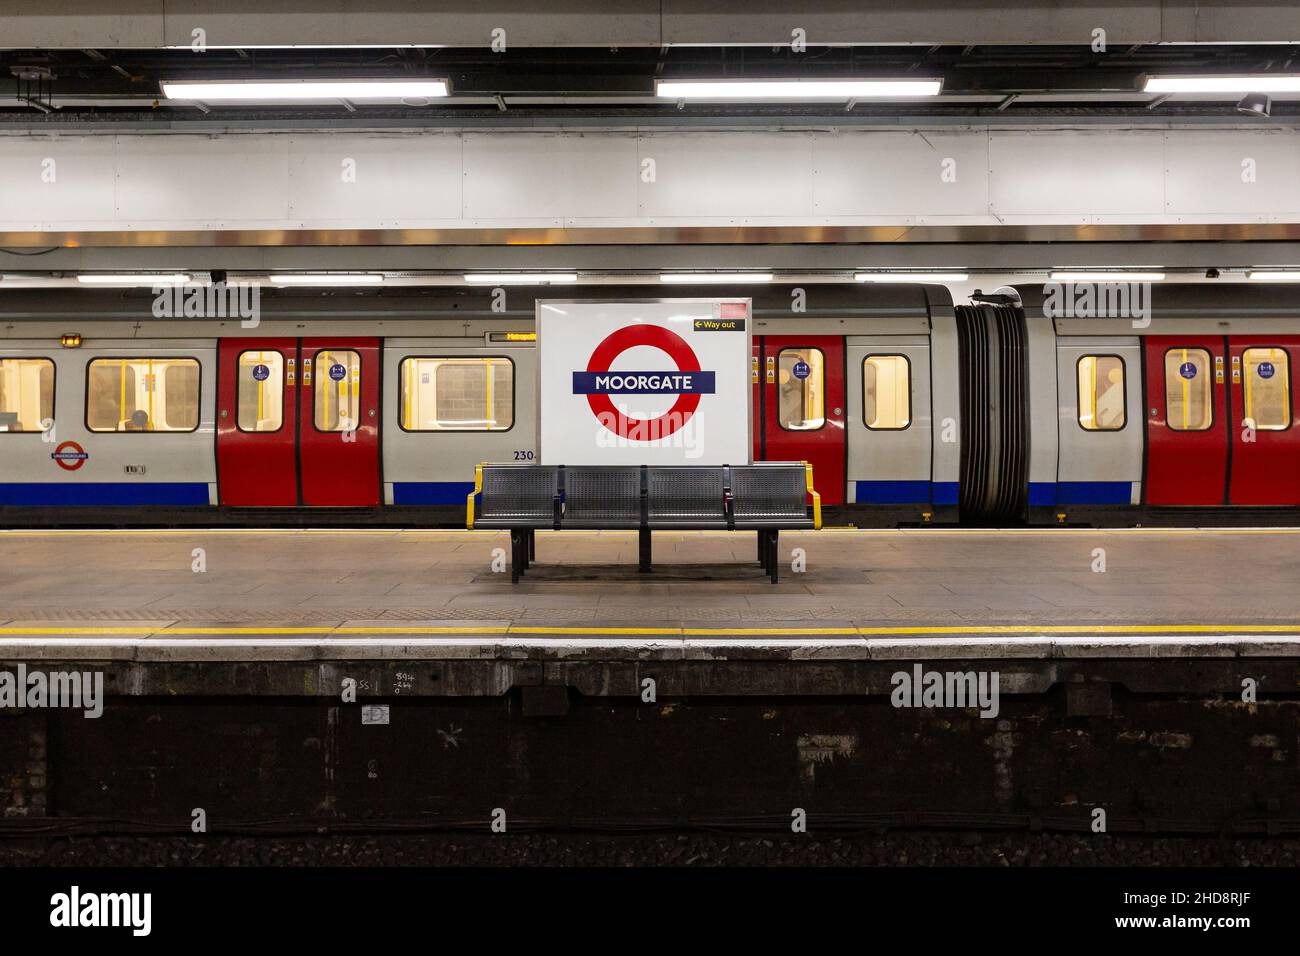 Le train Metropolitan Line se termine à la station Moorgate sur le métro de Londres Banque D'Images